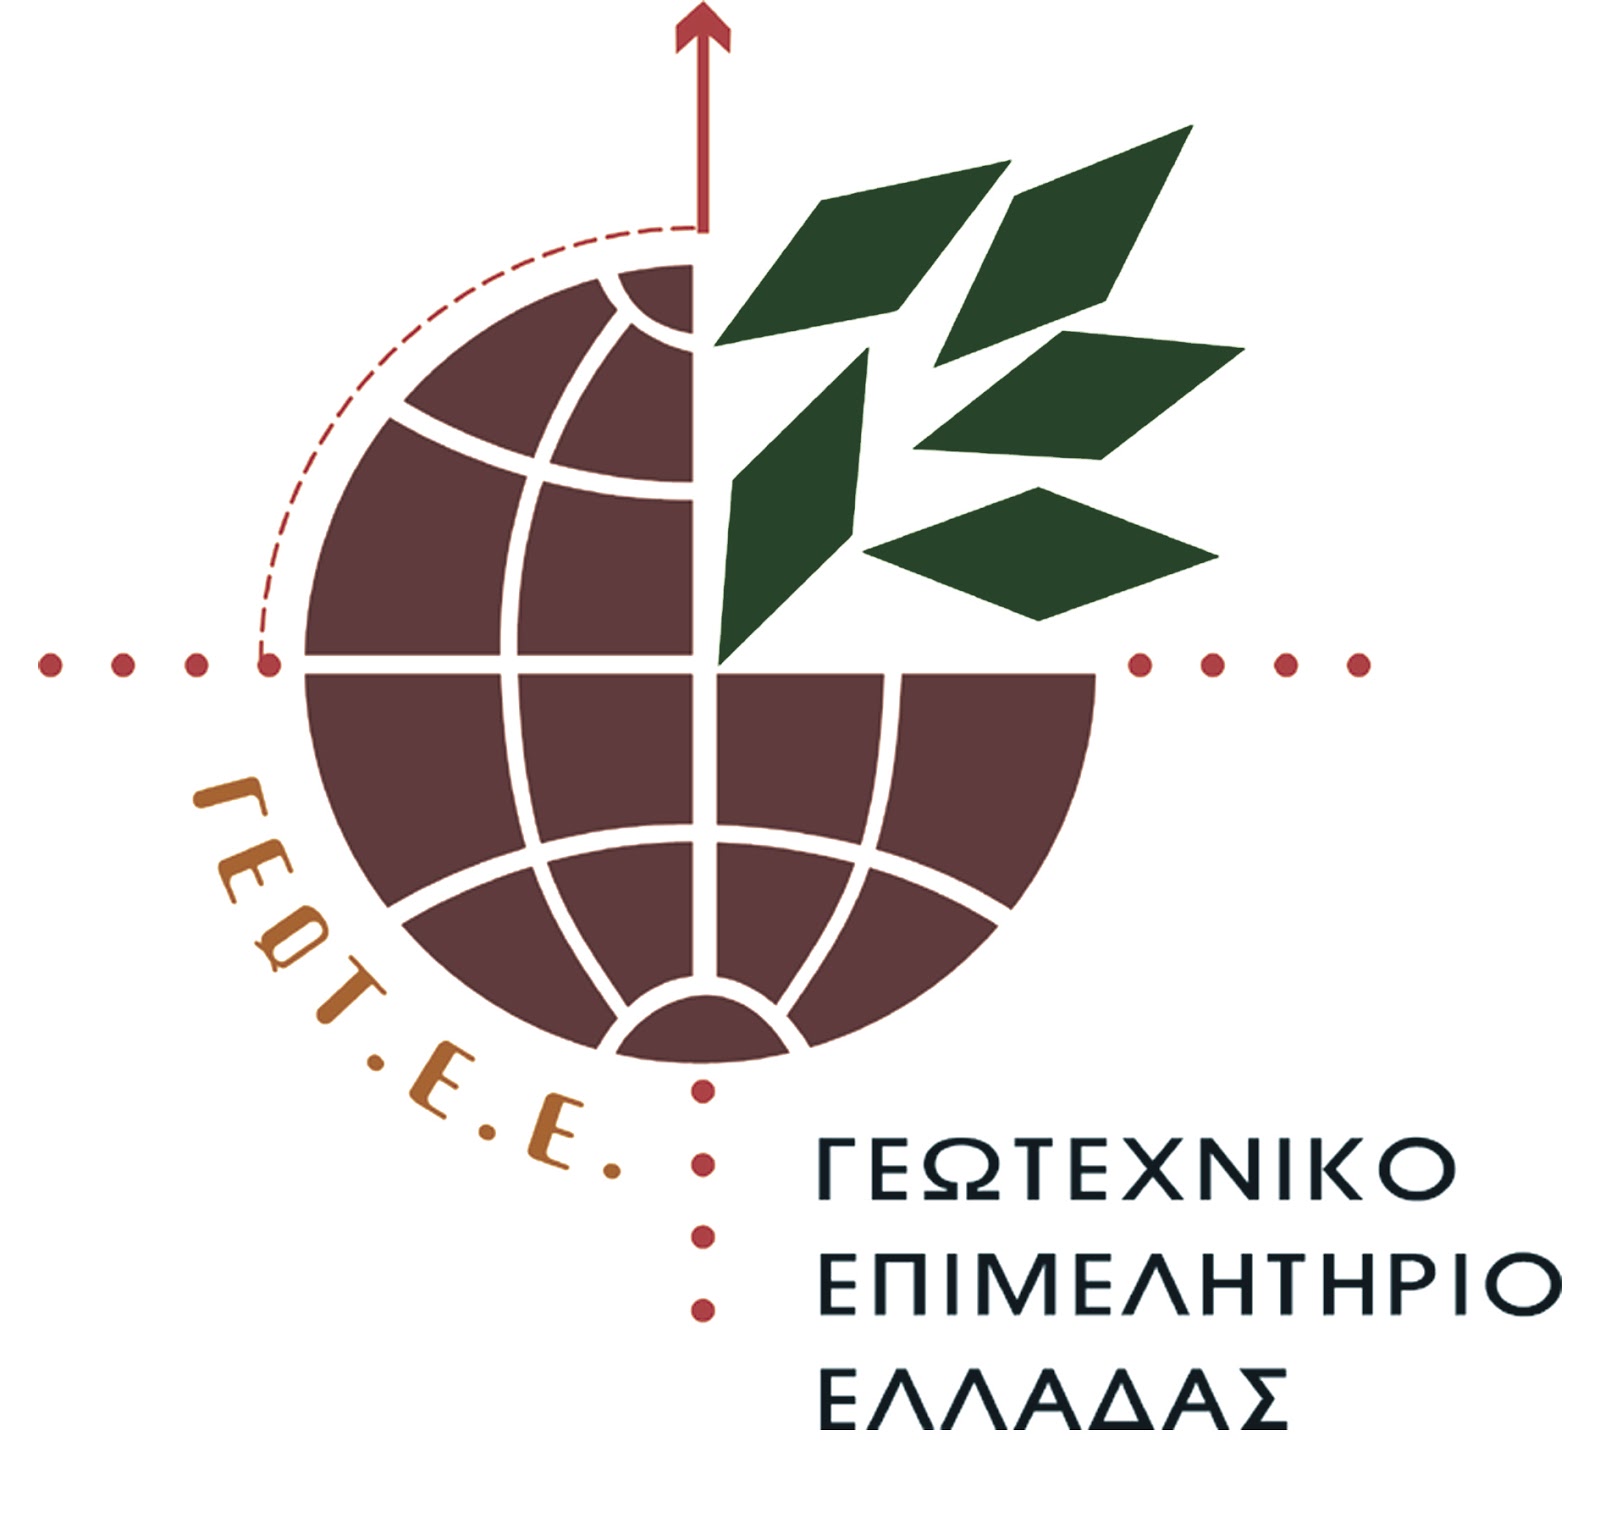 Επιστολή στην πολιτική ηγεσία του Υπουργείου Αγροτικής Ανάπτυξης και τροφίμων από το Περιφερειακό Παράρτημα Δυτικής Μακεδονίας του ΓΕΩΤ.Ε.Ε